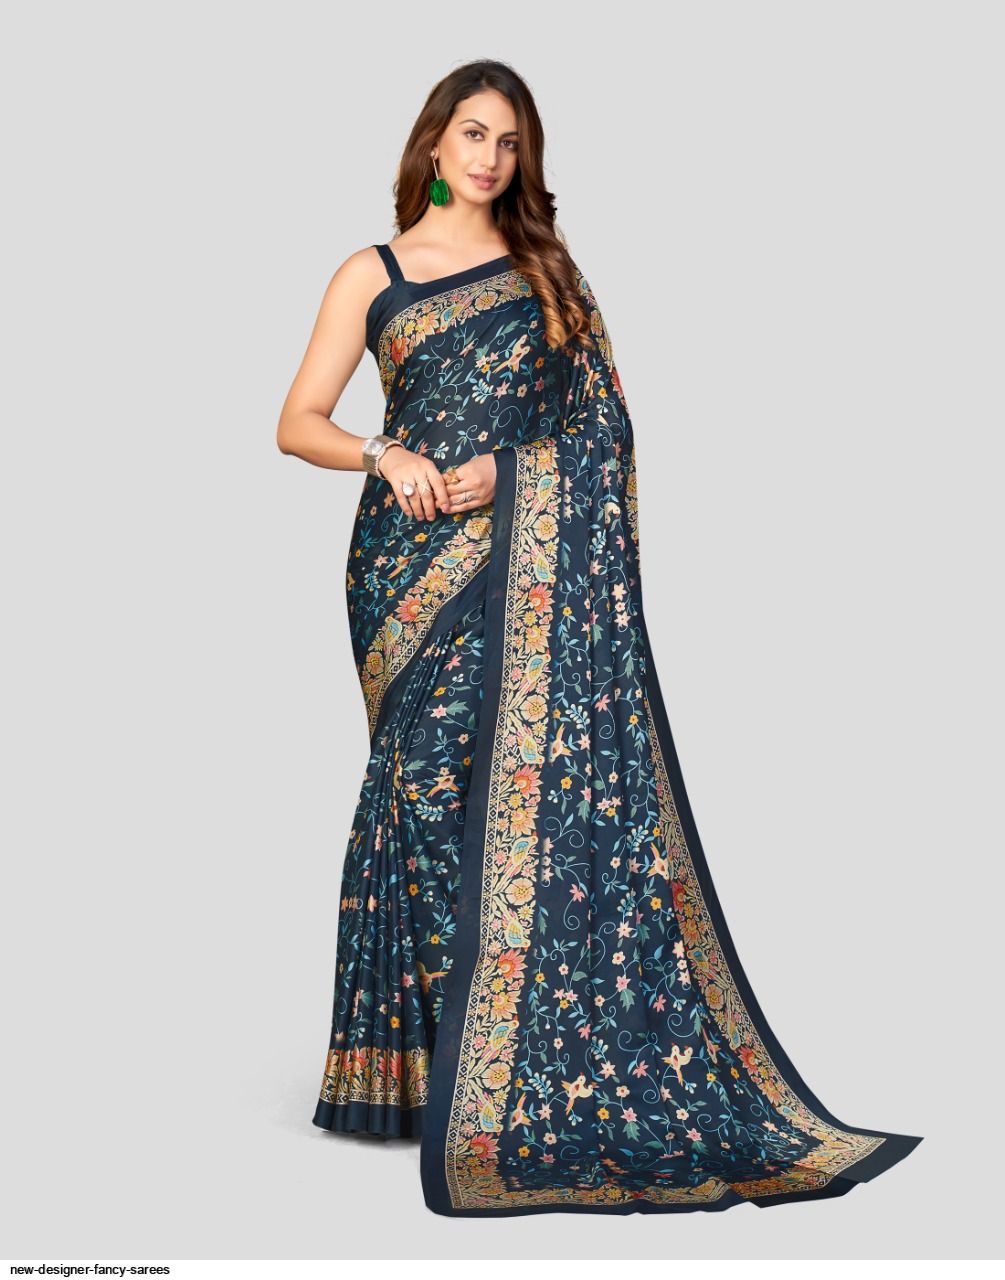 new-designer-fancy-sarees-032